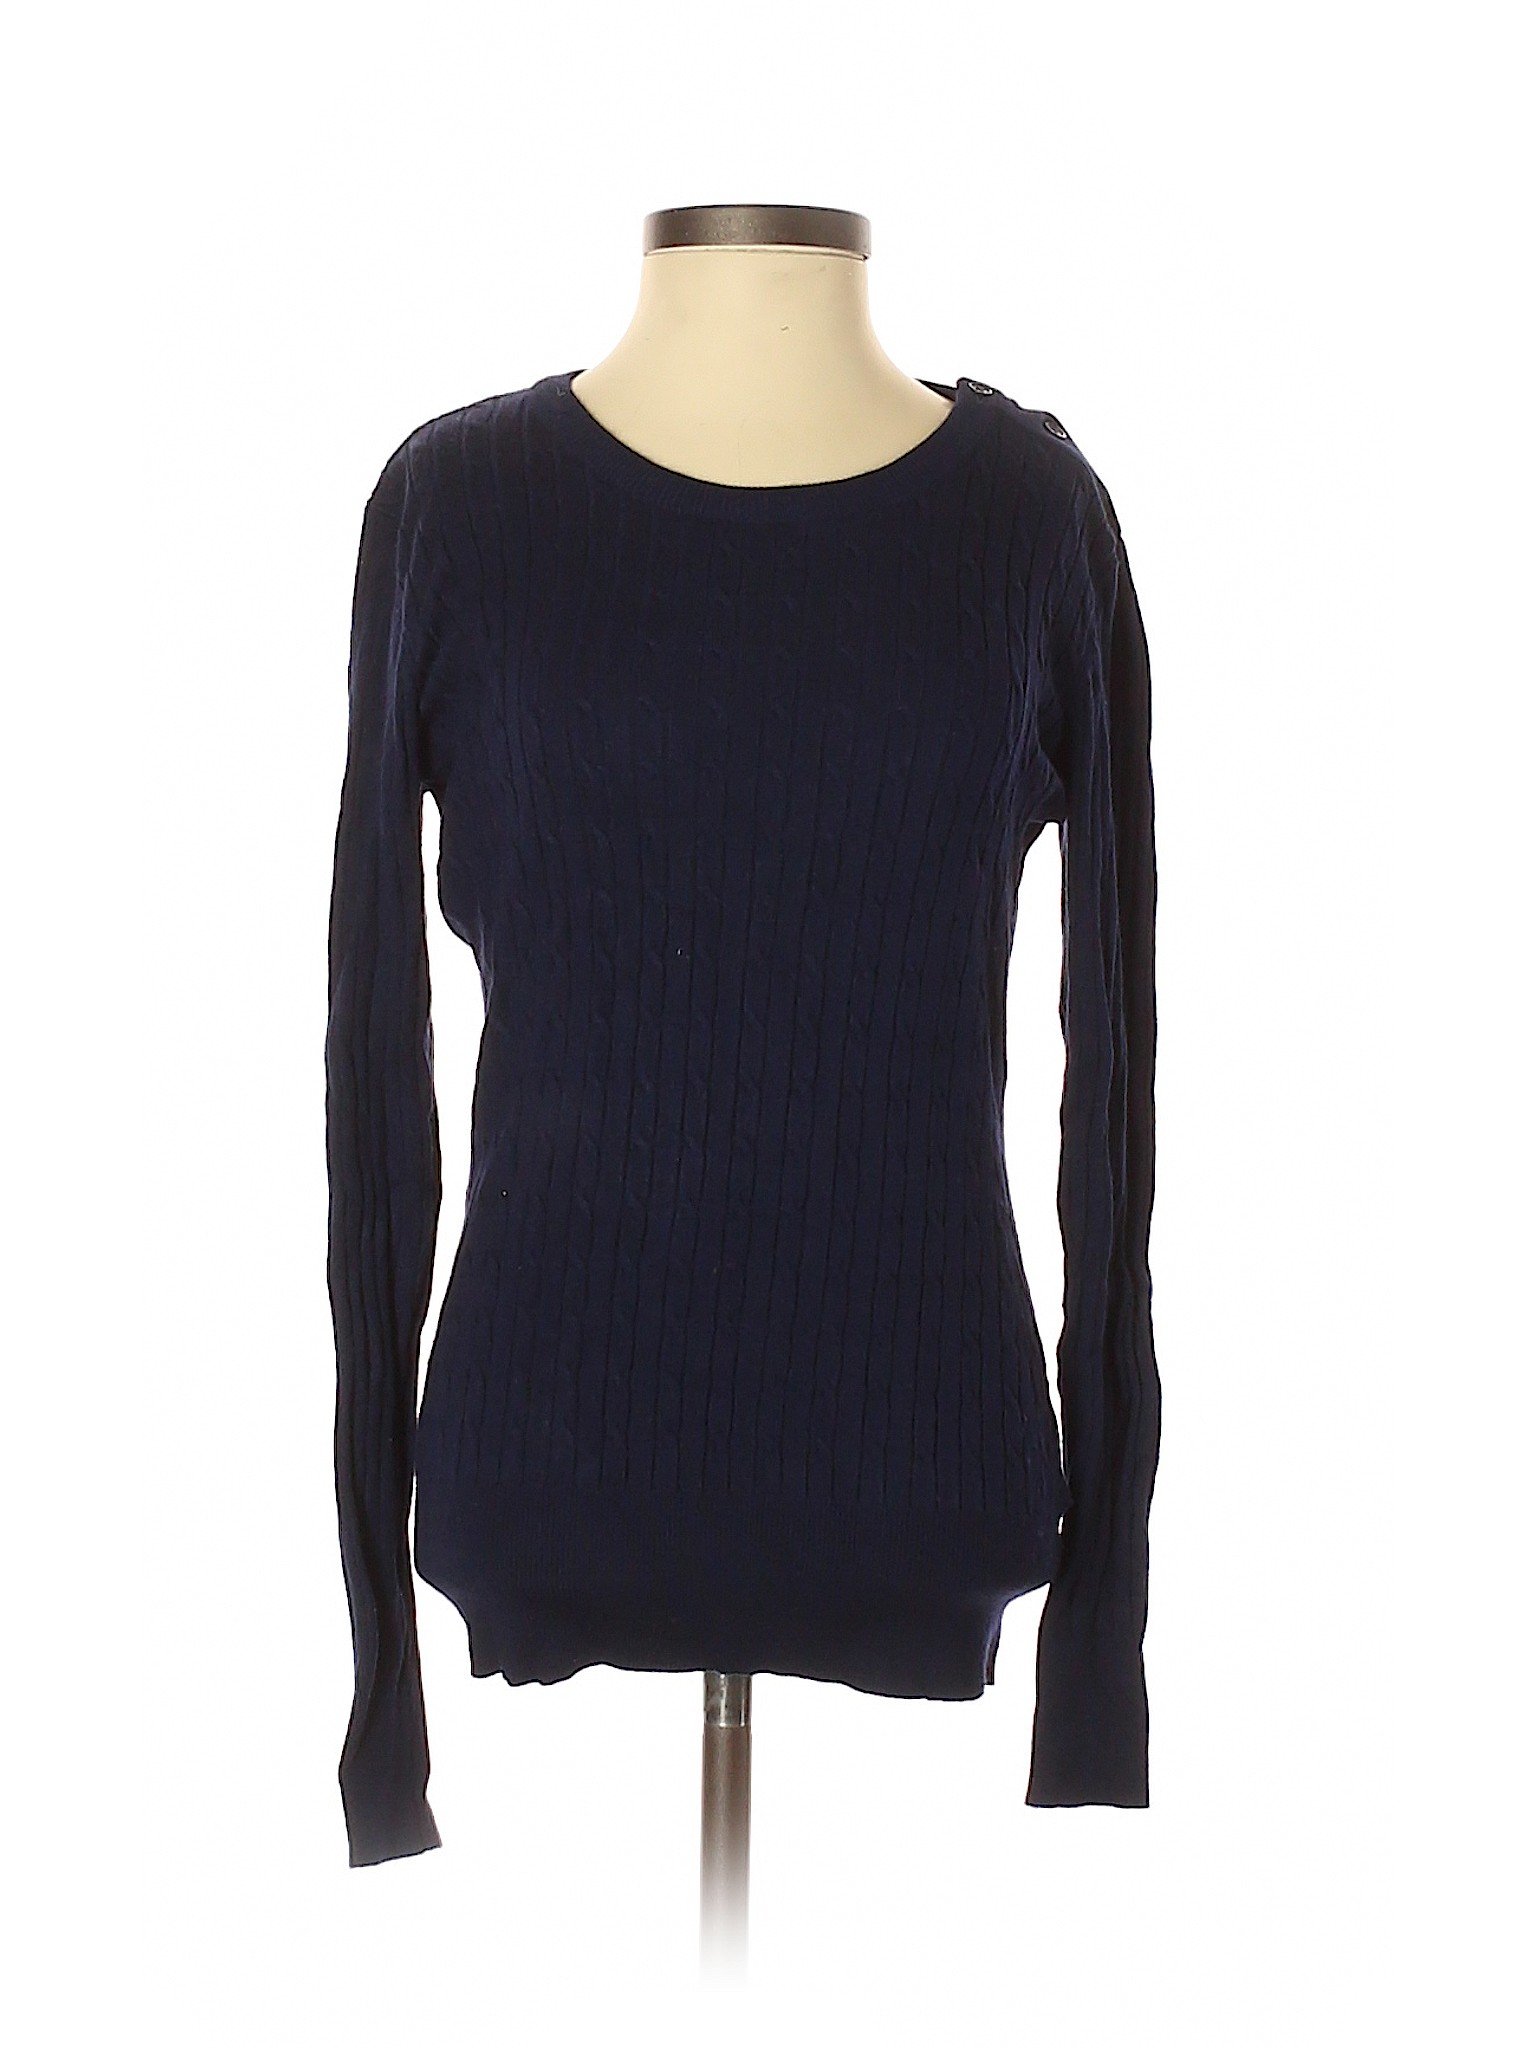 Cielo Women Blue Pullover Sweater S | eBay